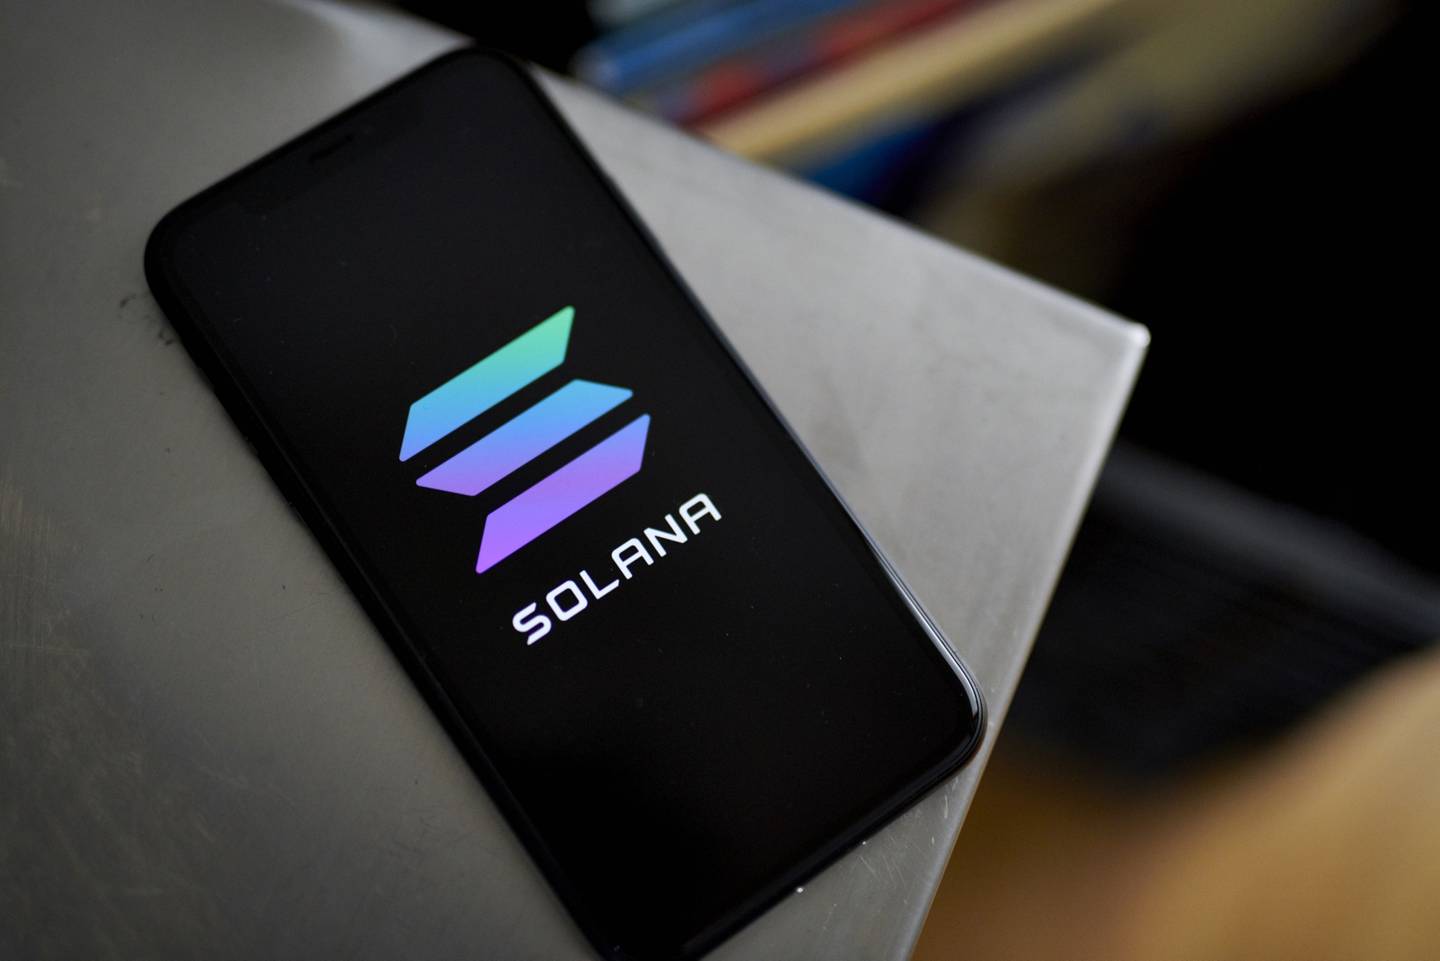 El logotipo de Solana en un smartphone.dfd